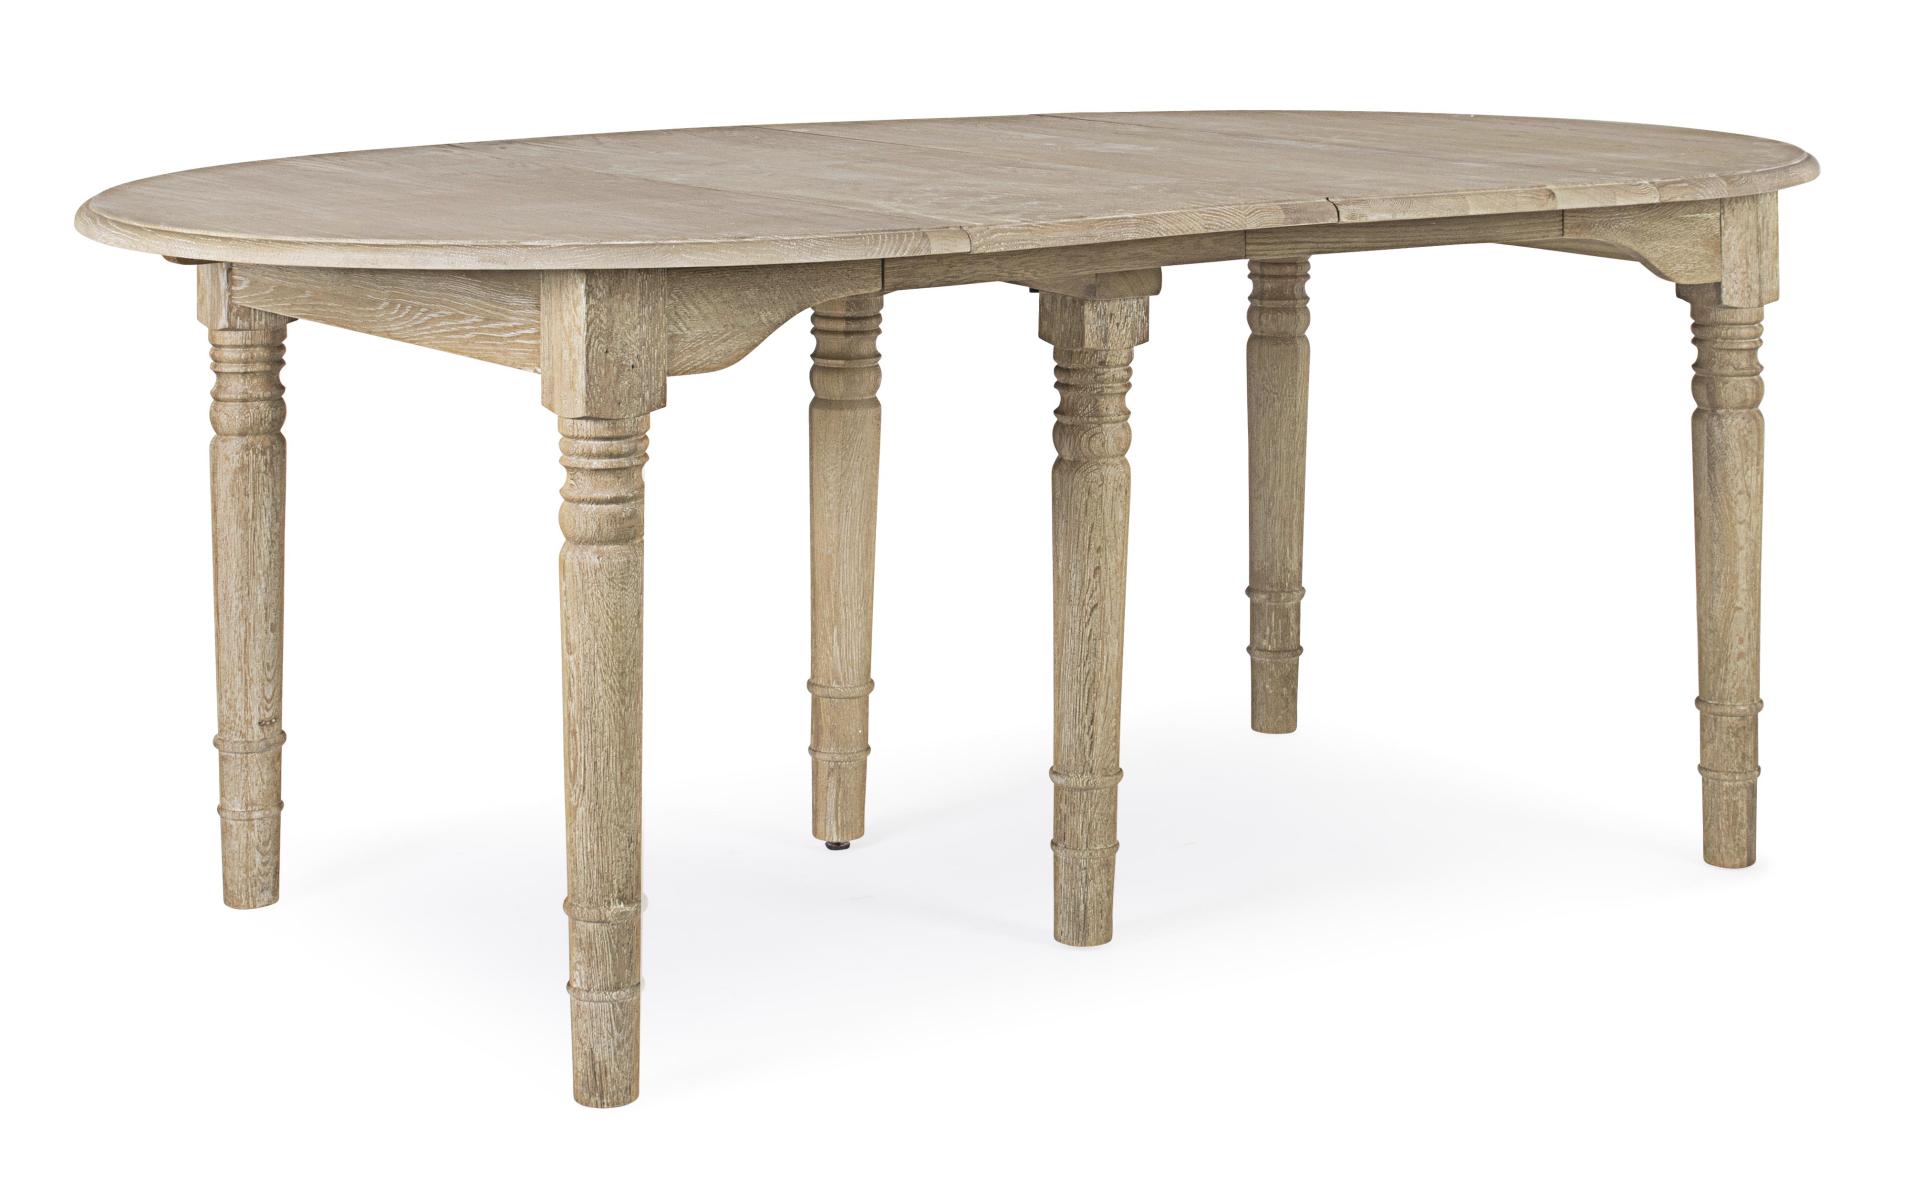 Der Esstisch Bedford überzeugt mit seinem klassischem Design. Gefertigt wurde er aus Eichenholz, welches einen natürlichen Farbton besitzt. Der Tisch ist ausziehbar von einer Länge von 110 cm auf 272 cm.